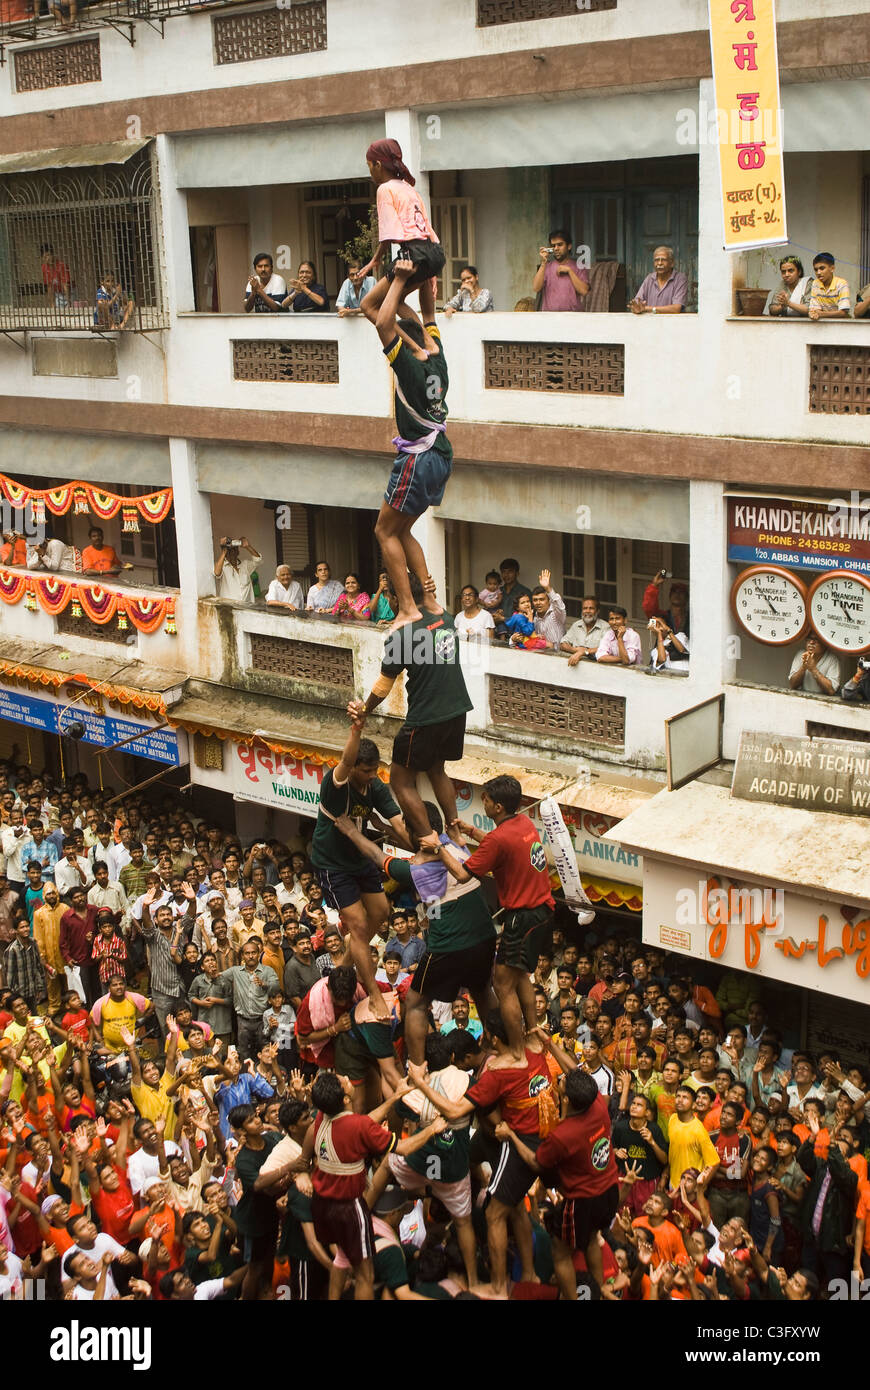 People celebrating Dahi Handi festival, Mumbai, Maharashtra, India Stock Photo